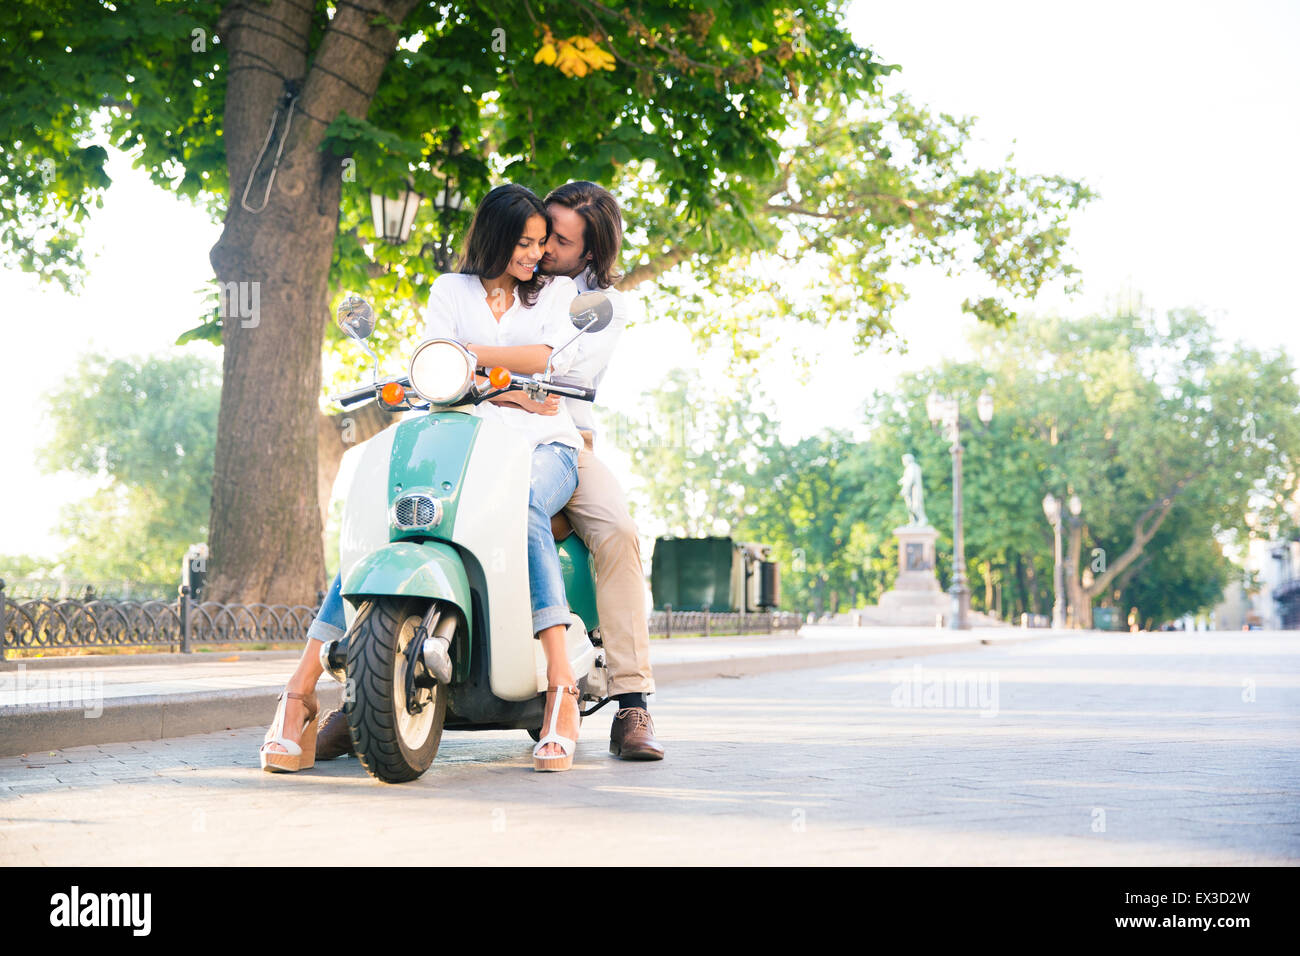 L'heureux couple flirting en scooter dans la ville Banque D'Images